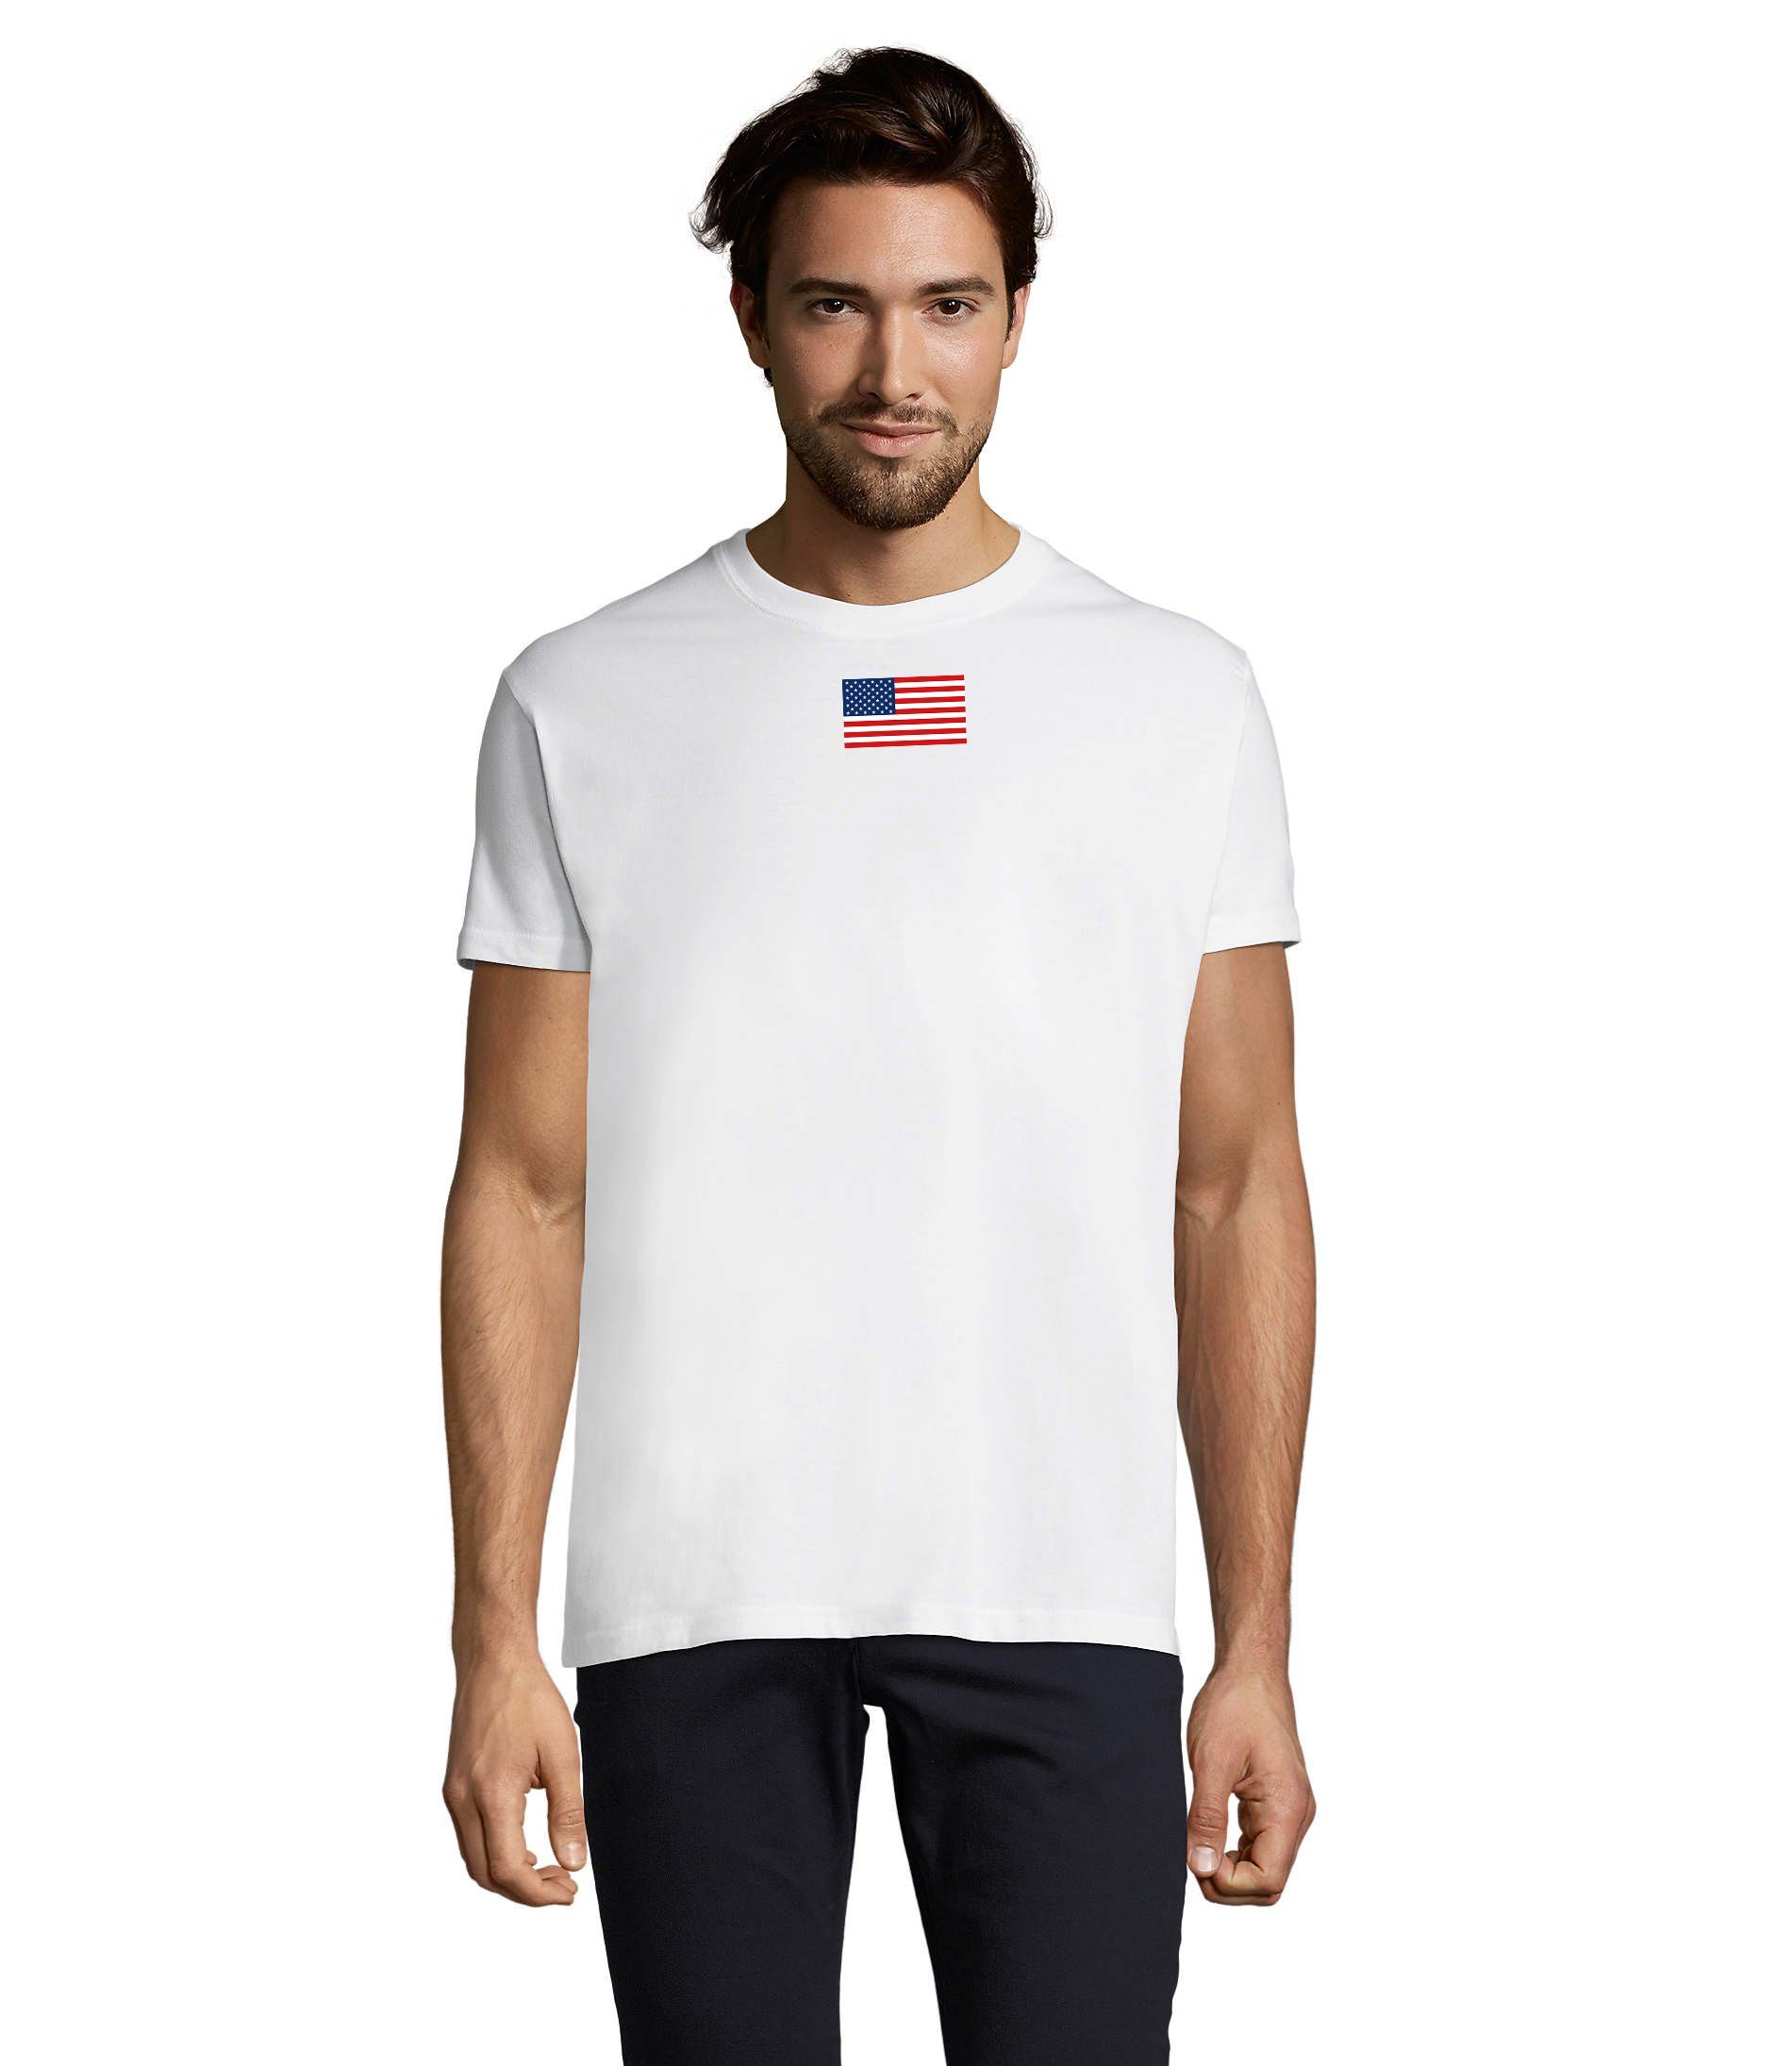 Blondie & Brownie T-Shirt Herren Nartion USA Vereinigte Staaten von Amerika Army Air Force Weiss